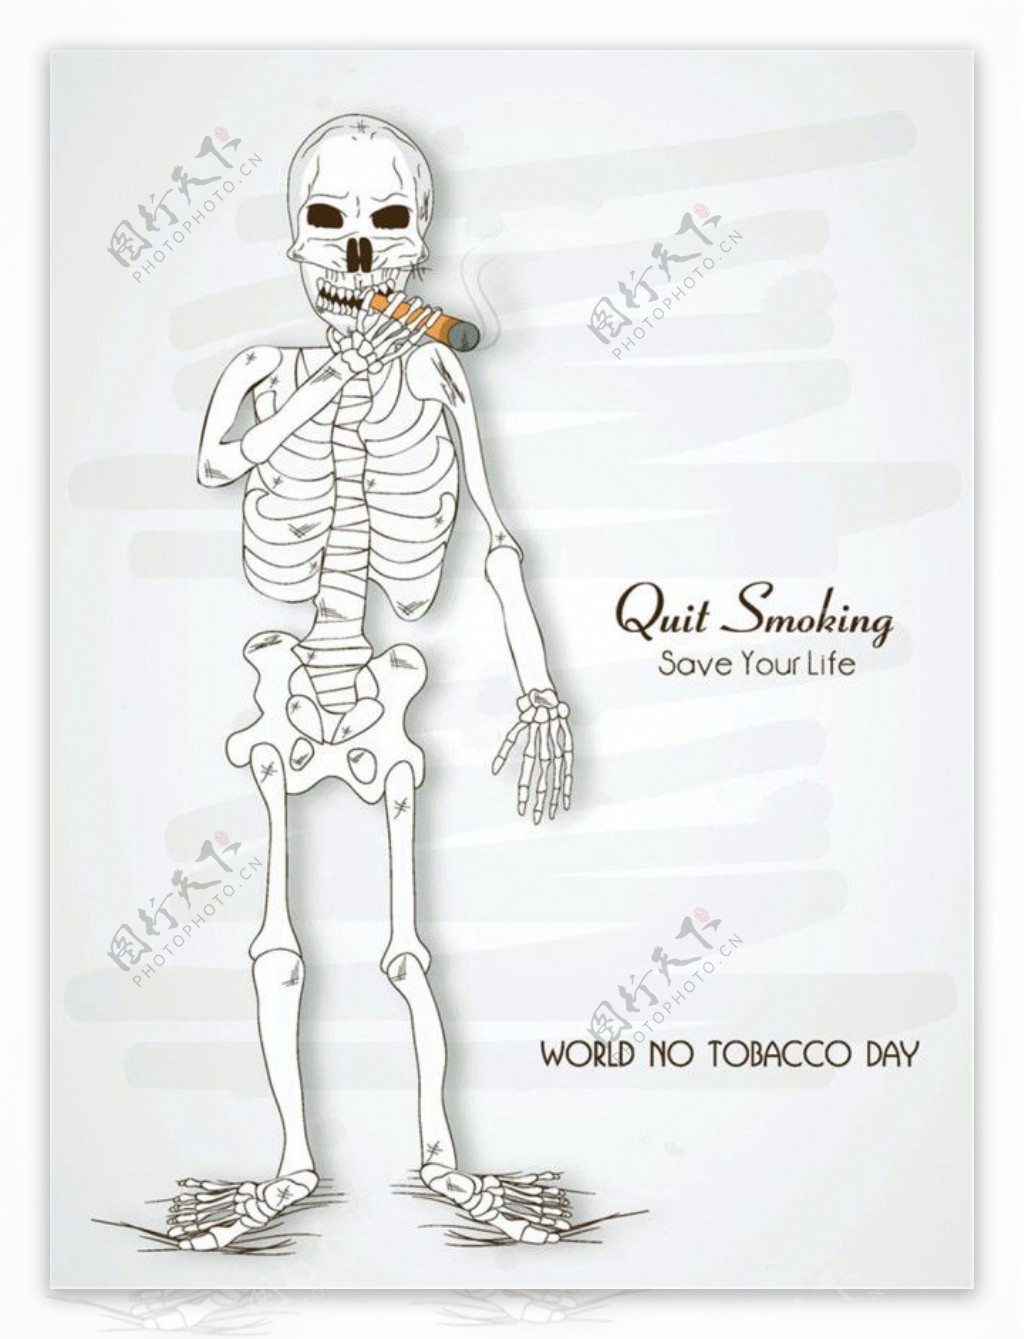 抽烟的骷髅图片